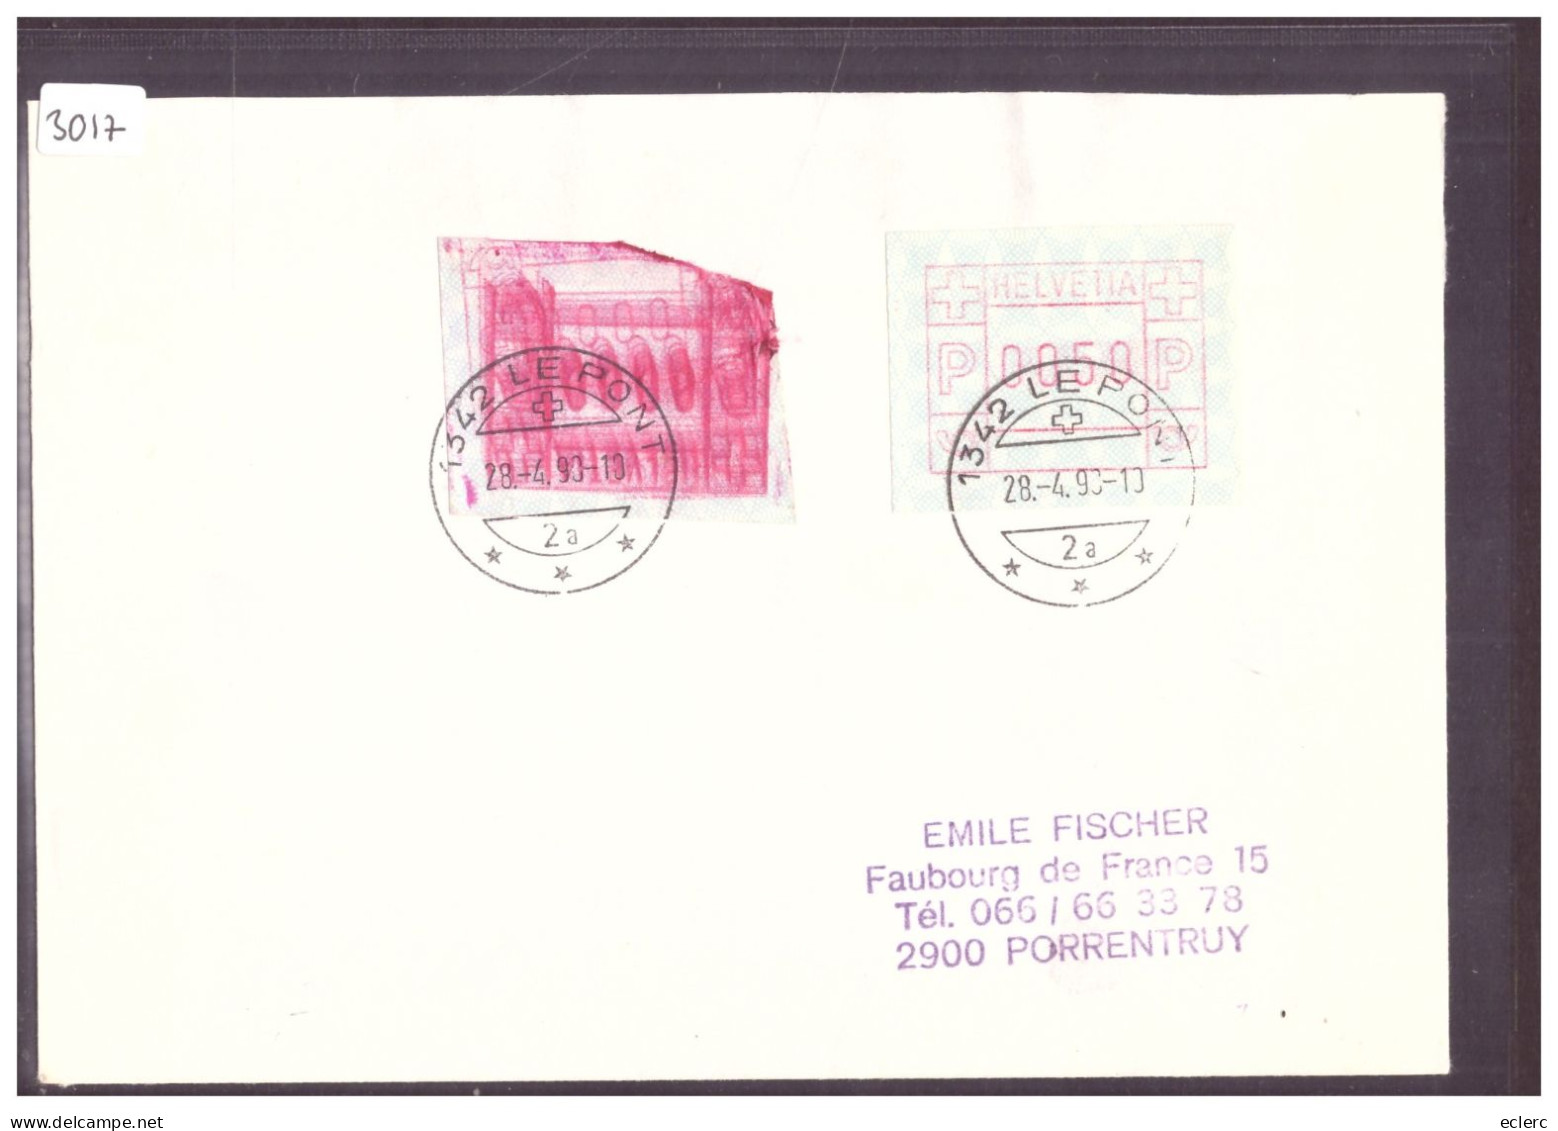 AUTOMATE - VARIETE - ETIQUETTE DEFECTUEUSE - Automatic Stamps